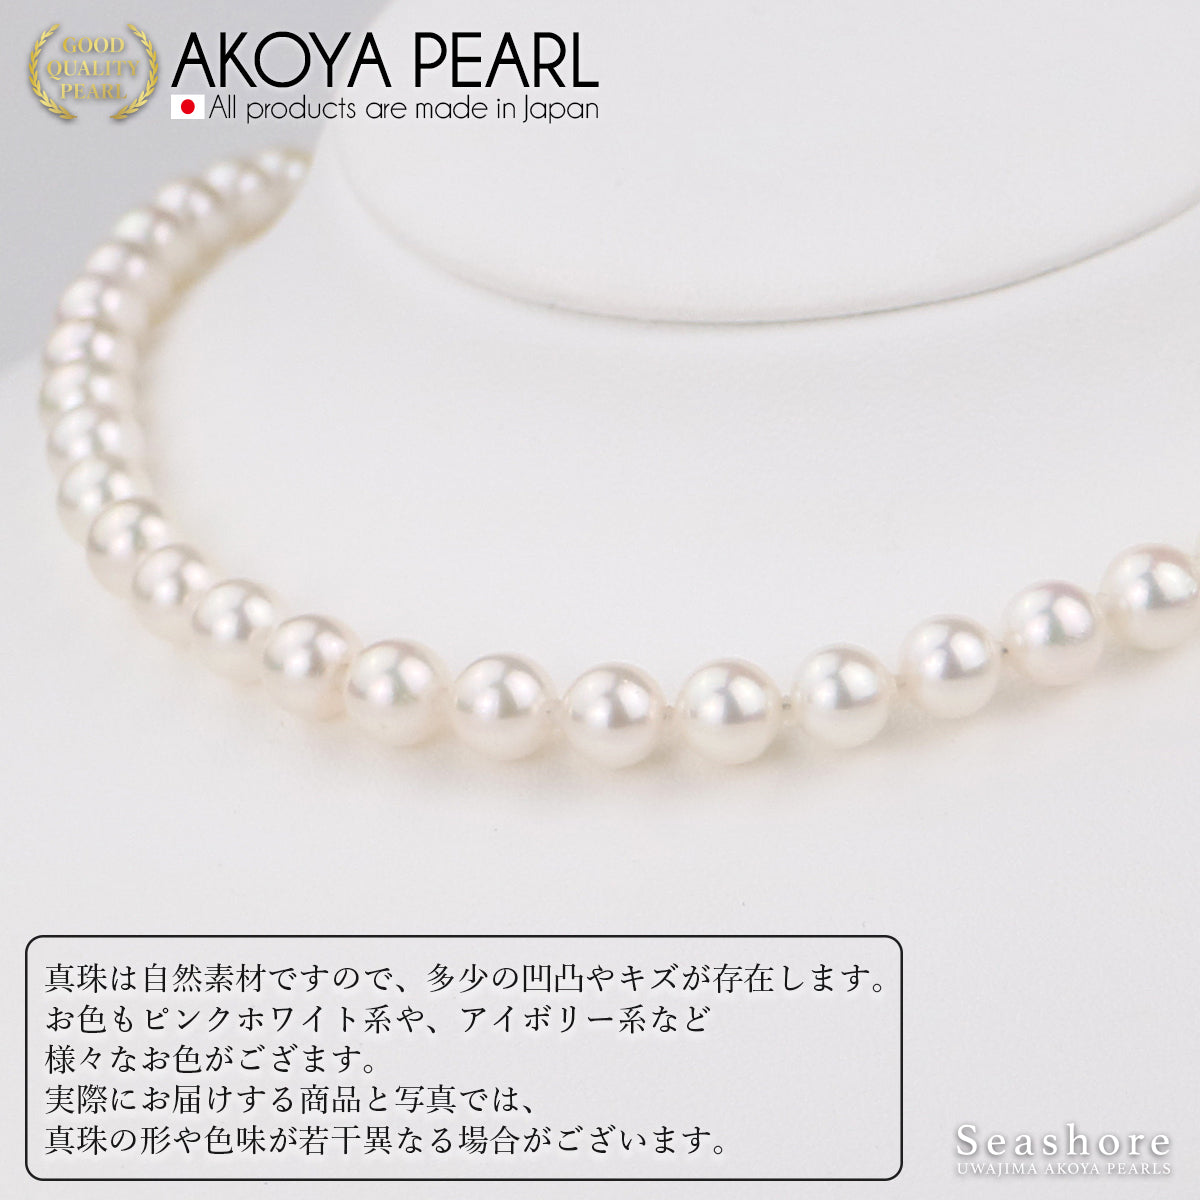 花珠珍珠正装项链 2 件装 [7.0-7.5 毫米]（含耳环）正装套装，带真品证书和仪式场合用储物盒